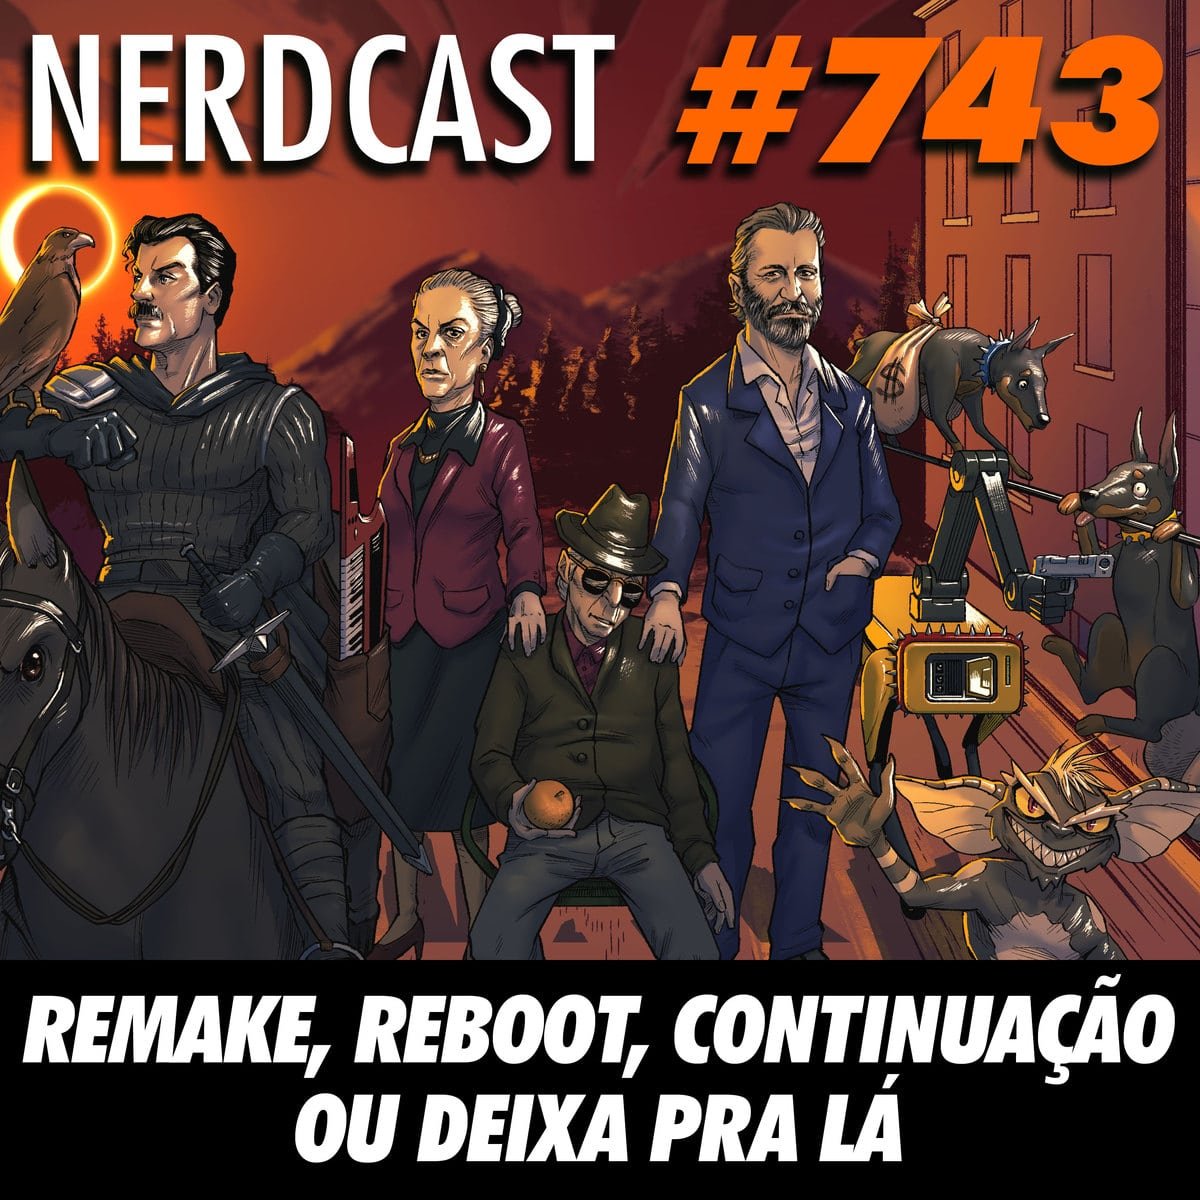 NerdCast 743 - Reboot, remake, continuação ou deixa pra lá!